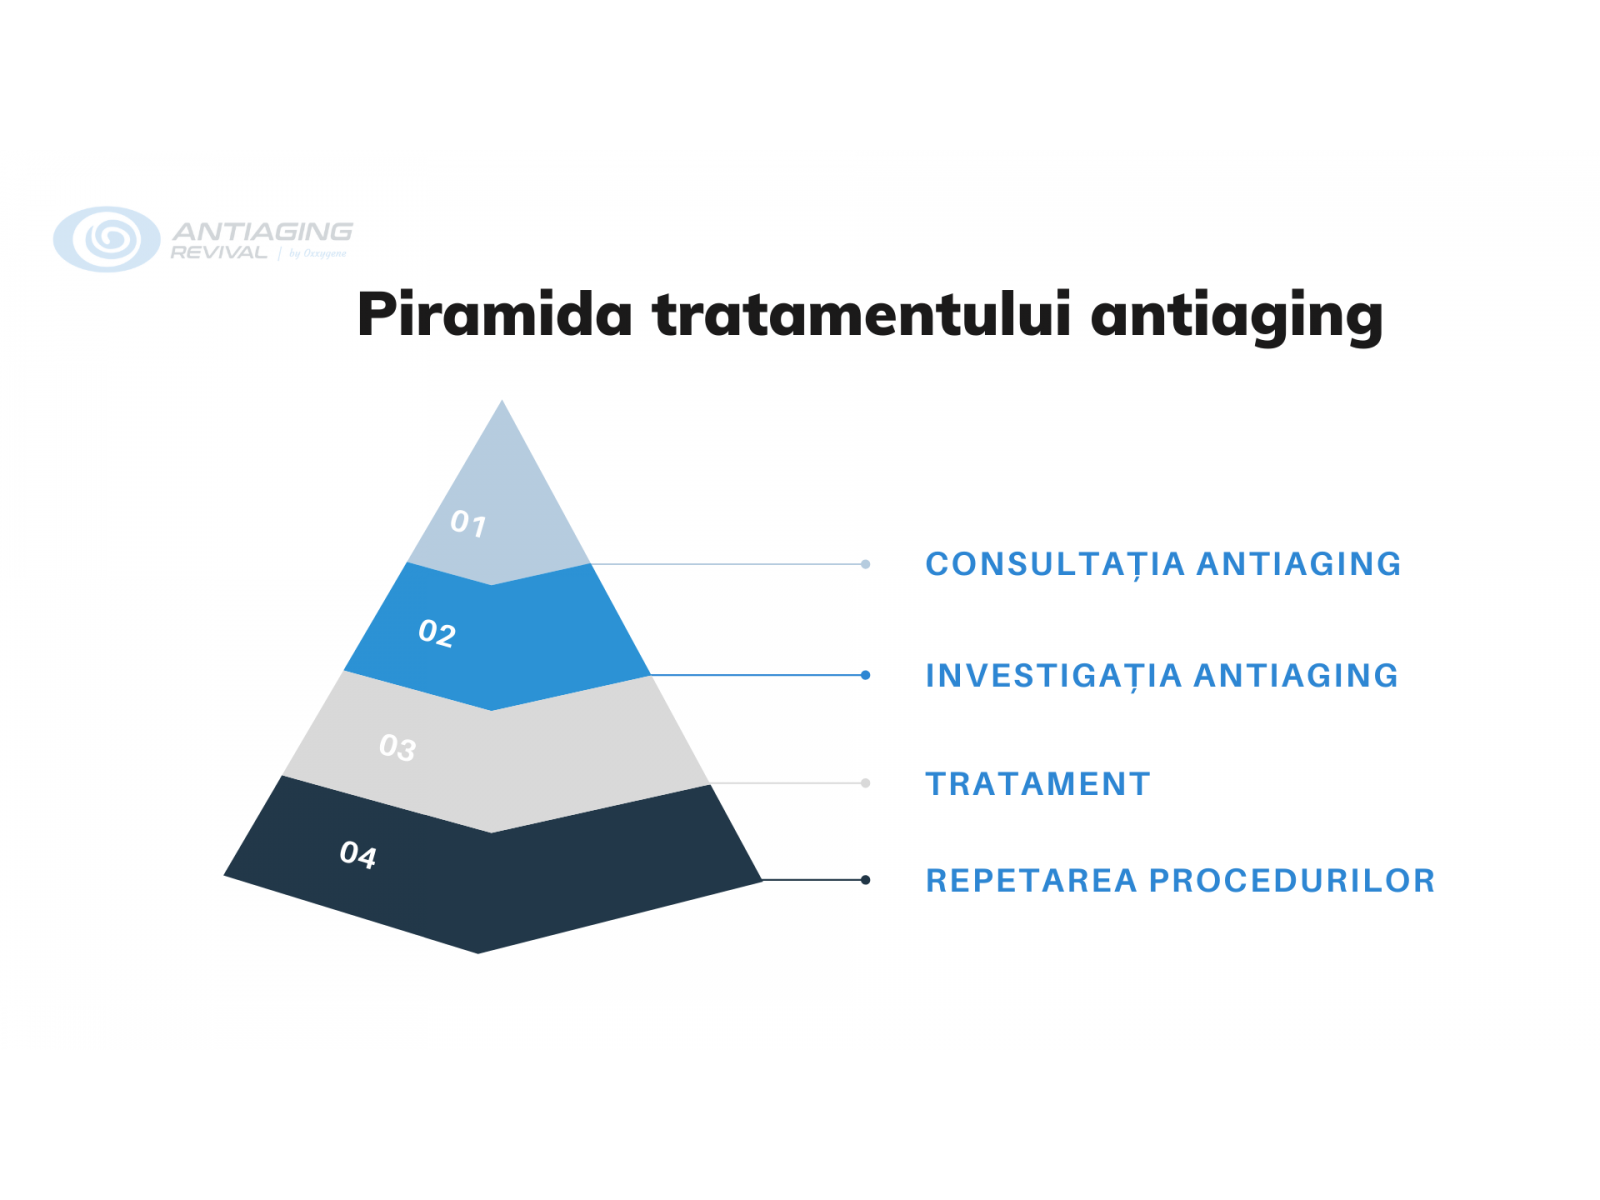 SPITALUL OXXYGENE - Piramida_tratamentului_antiaging.png